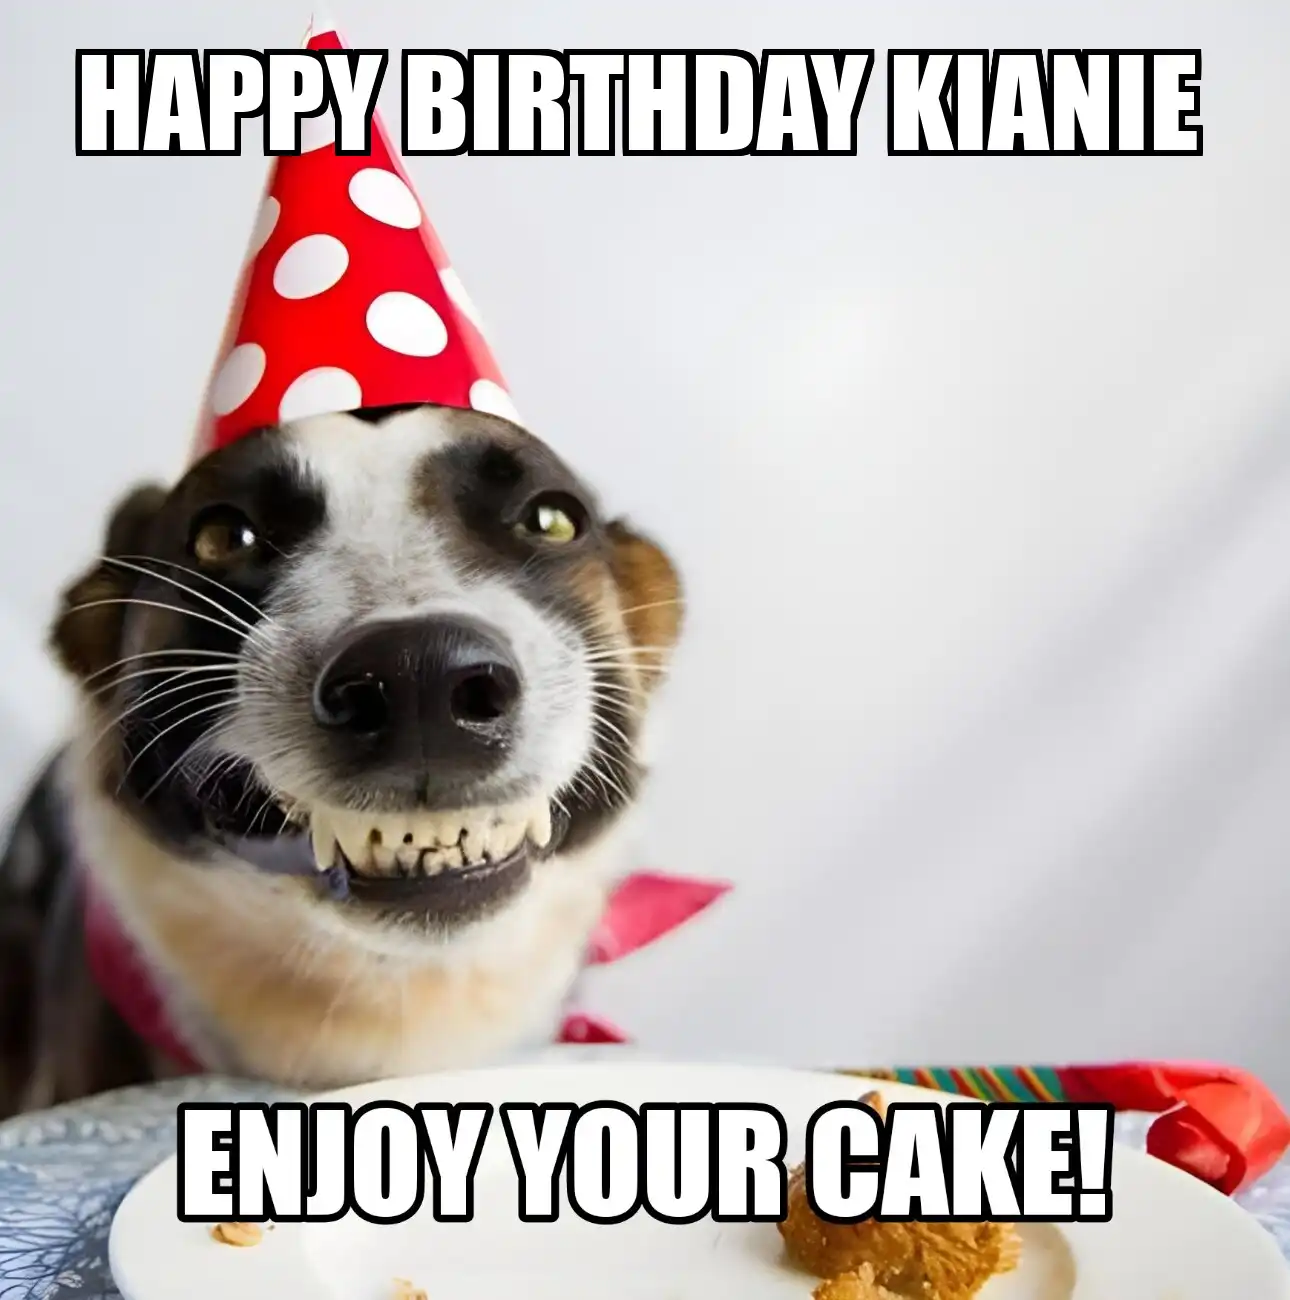 Happy Birthday Kianie Enjoy Your Cake Dog Meme